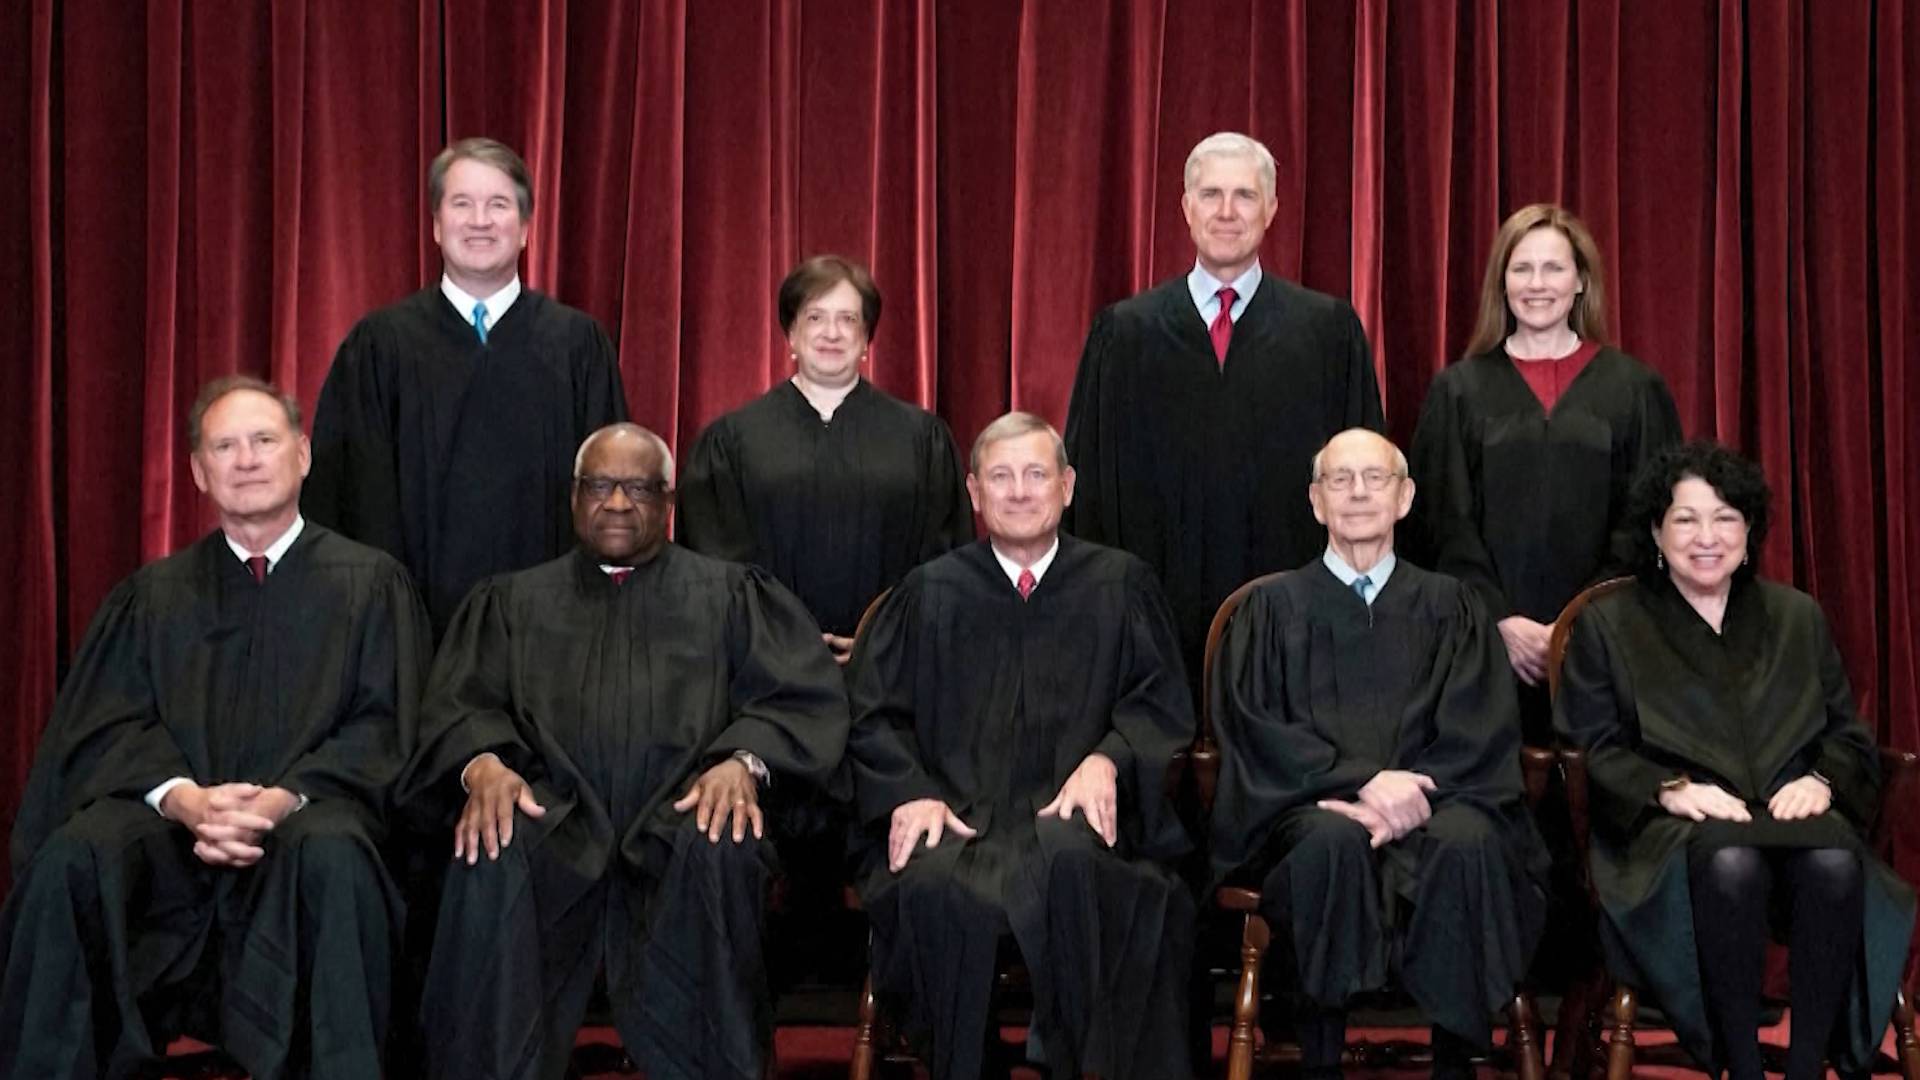 Actuales miembros de la Suprema Corte de los Estados Unidos